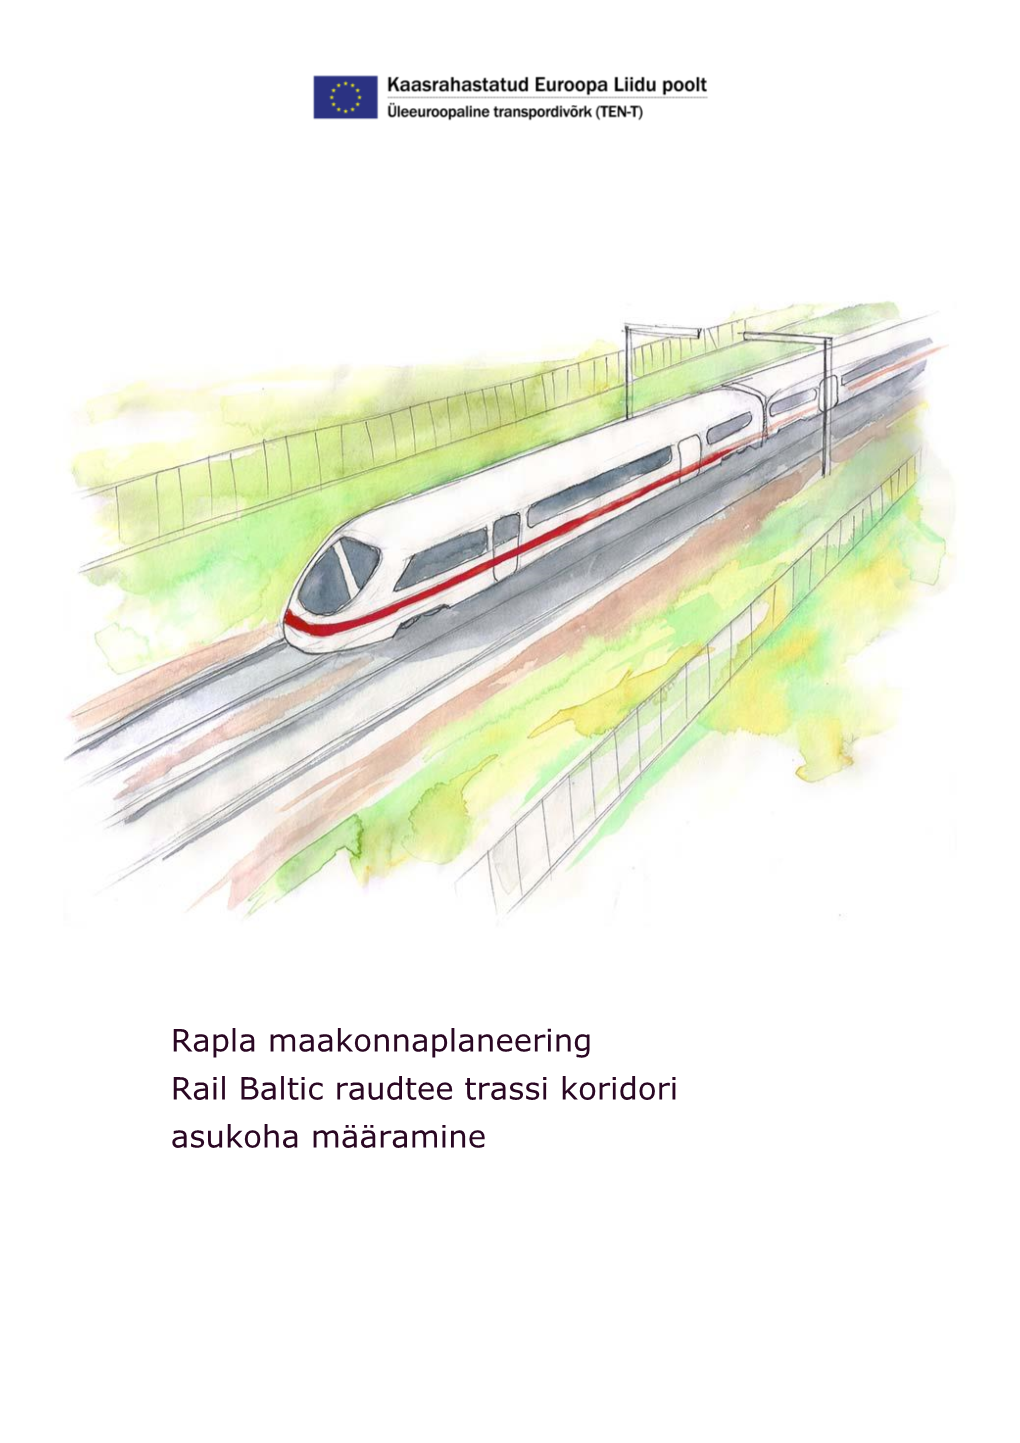 Rapla Maakonnaplaneering Rail Baltic Raudtee Trassi Koridori Asukoha Määramine